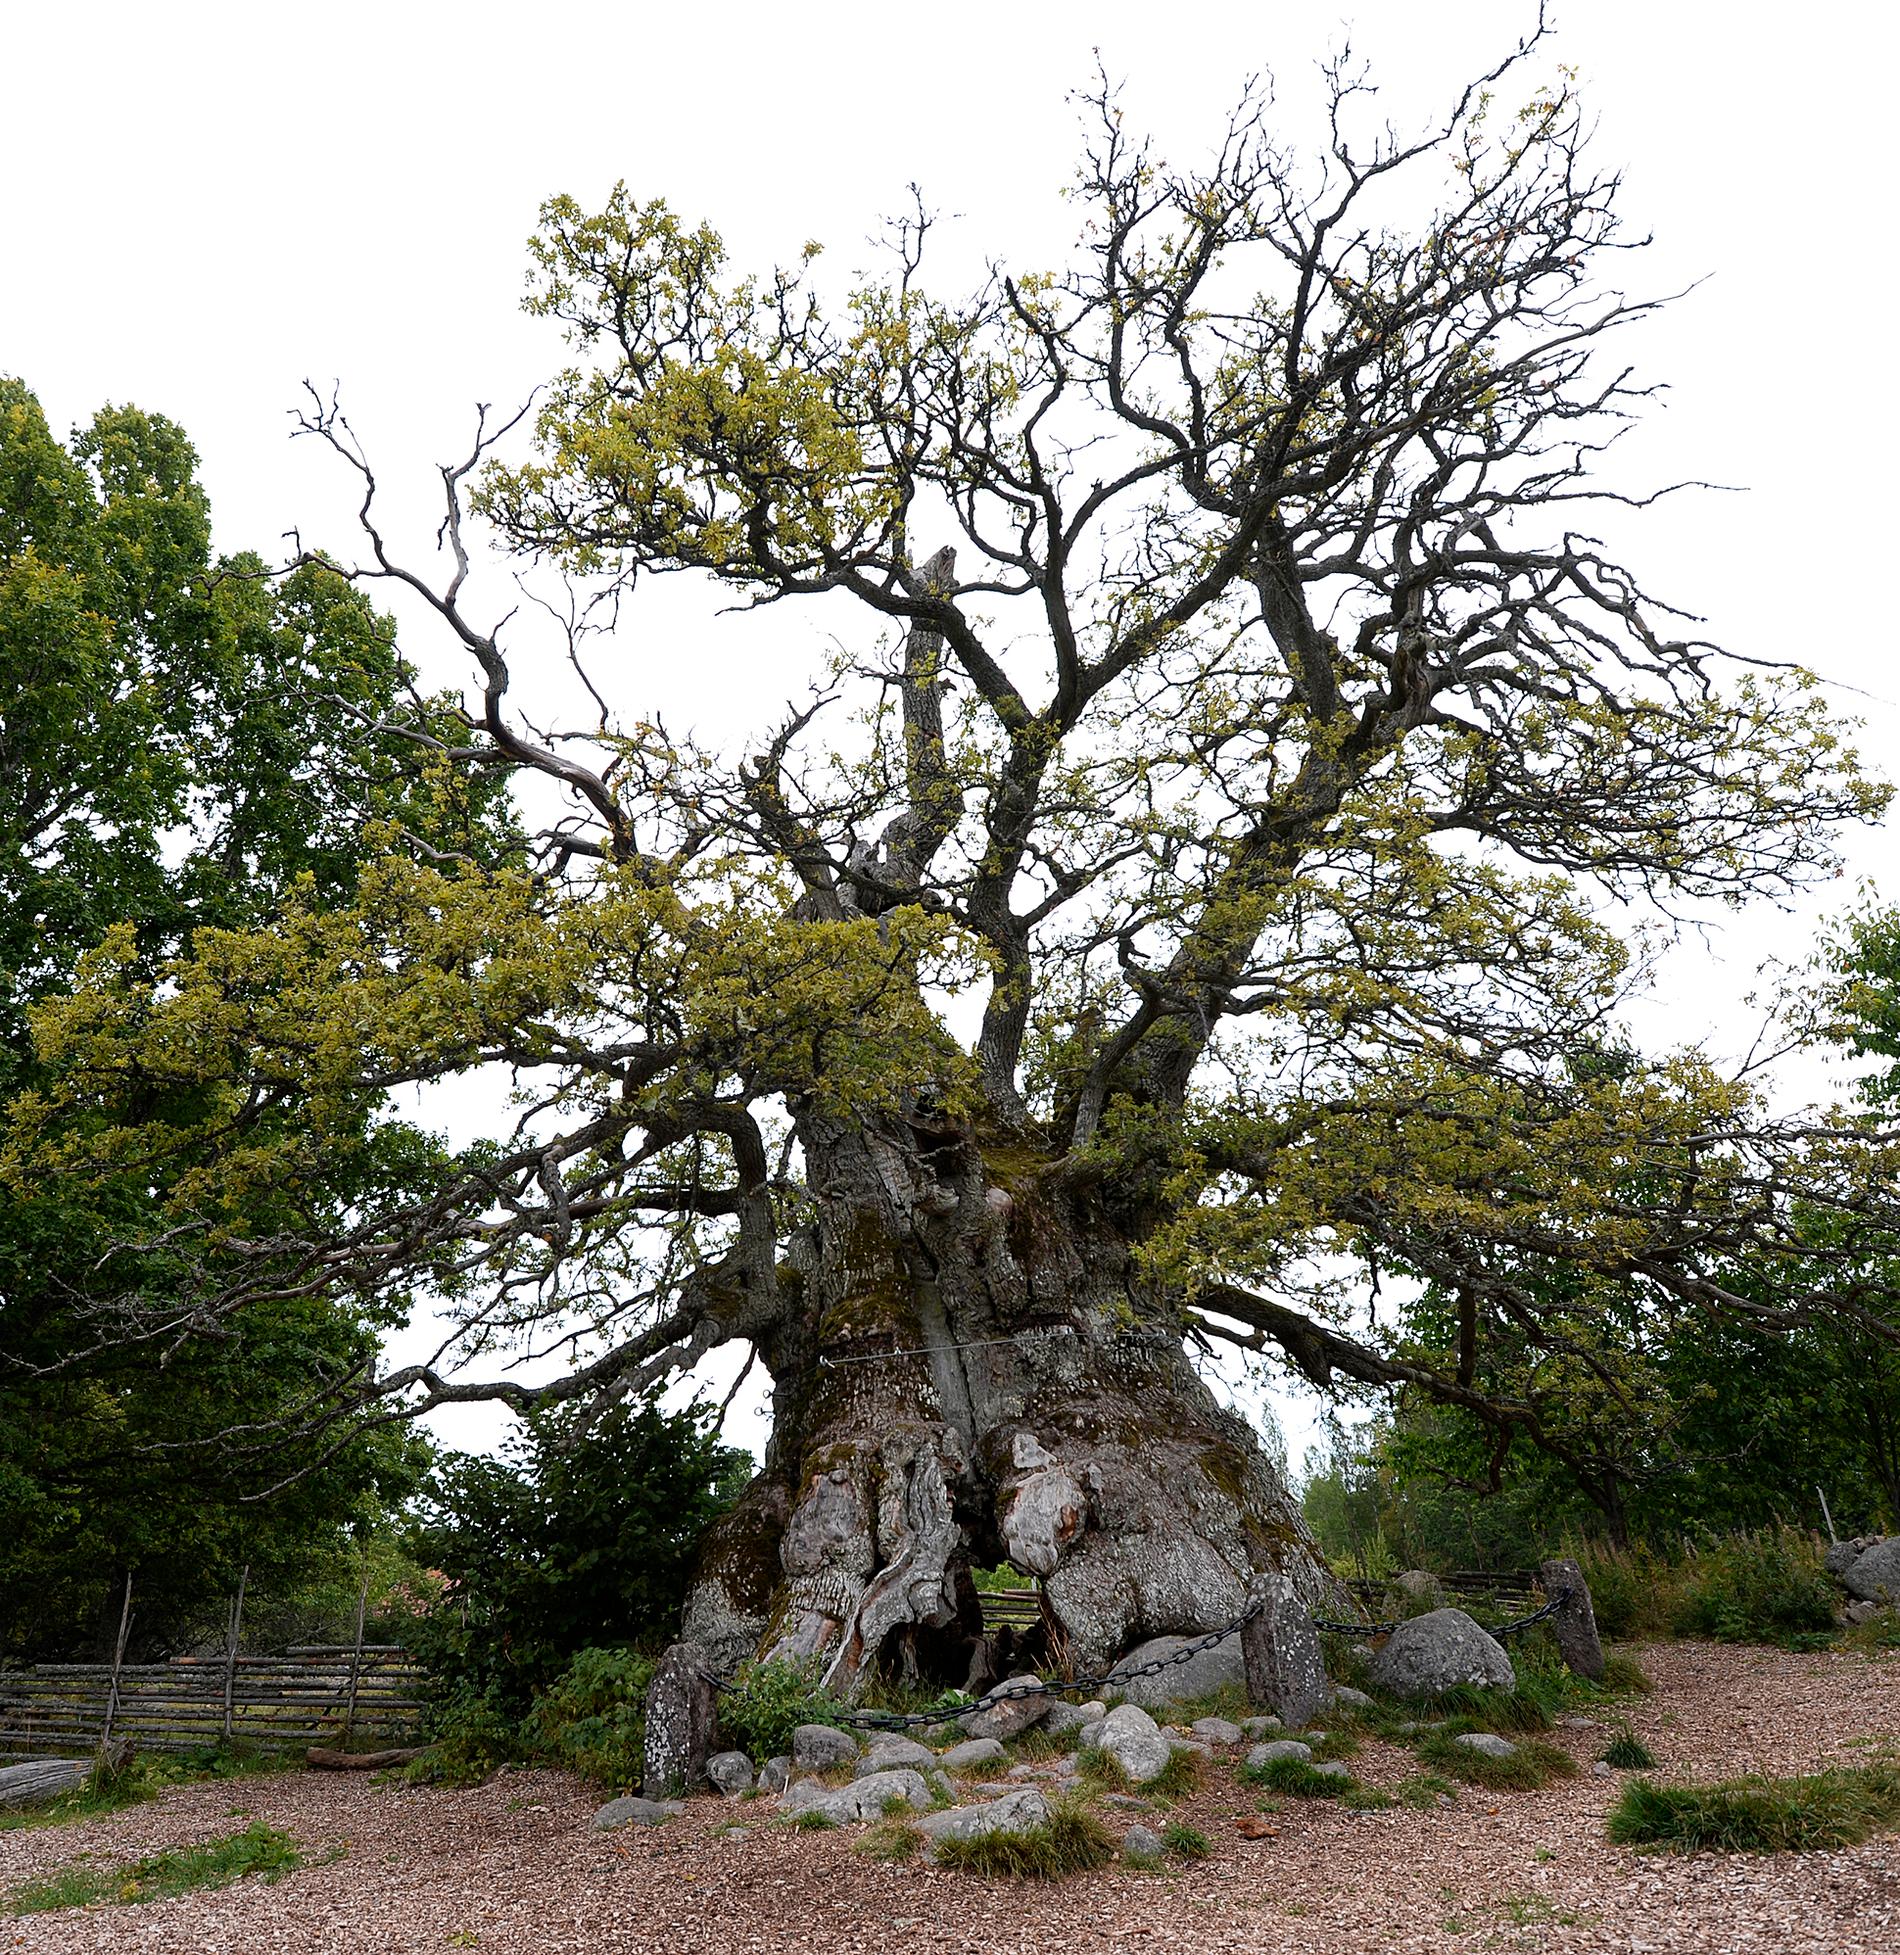 Kvilleken i Kvillreservatet utanför Vimmerby sägs vara nära tusen år gammal och mäter 14 meter i omkrets.